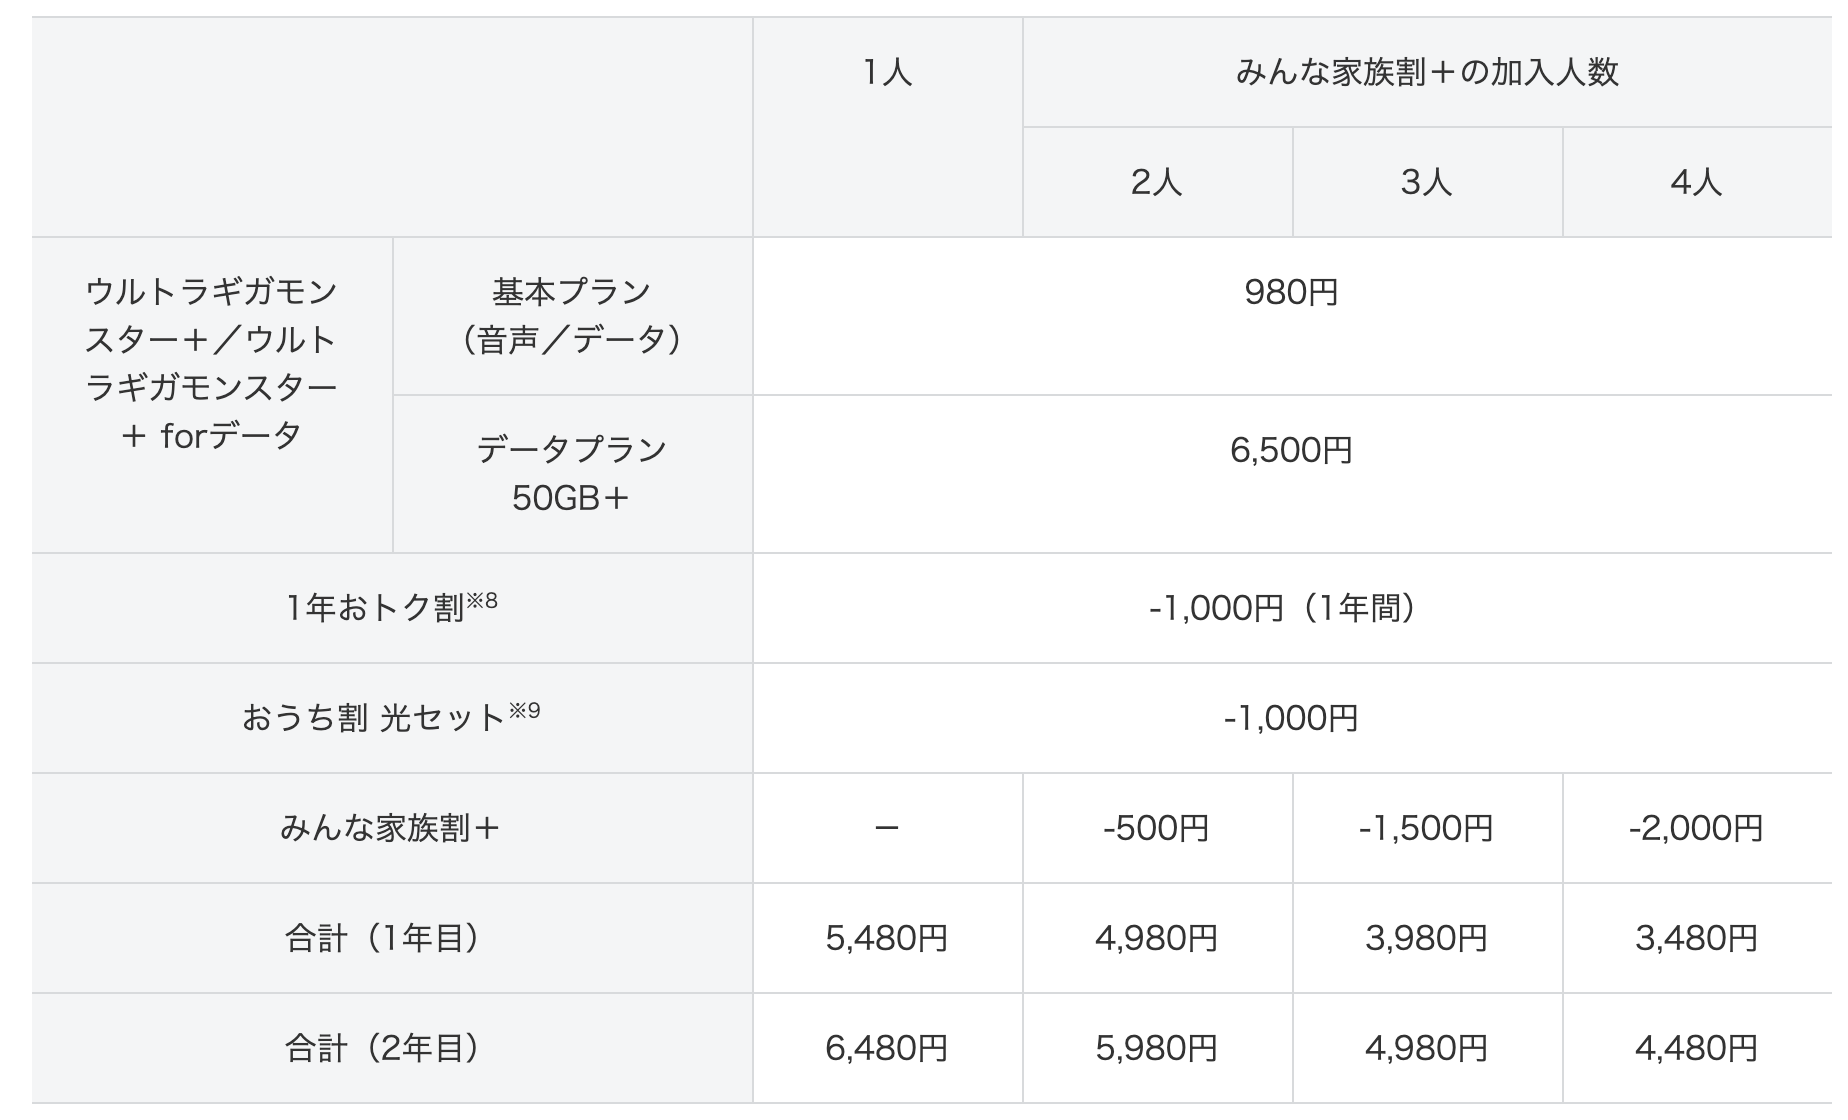 ソフトバンクが 2年縛り 廃止へ 9月13日から新プラン提供 Engadget 日本版